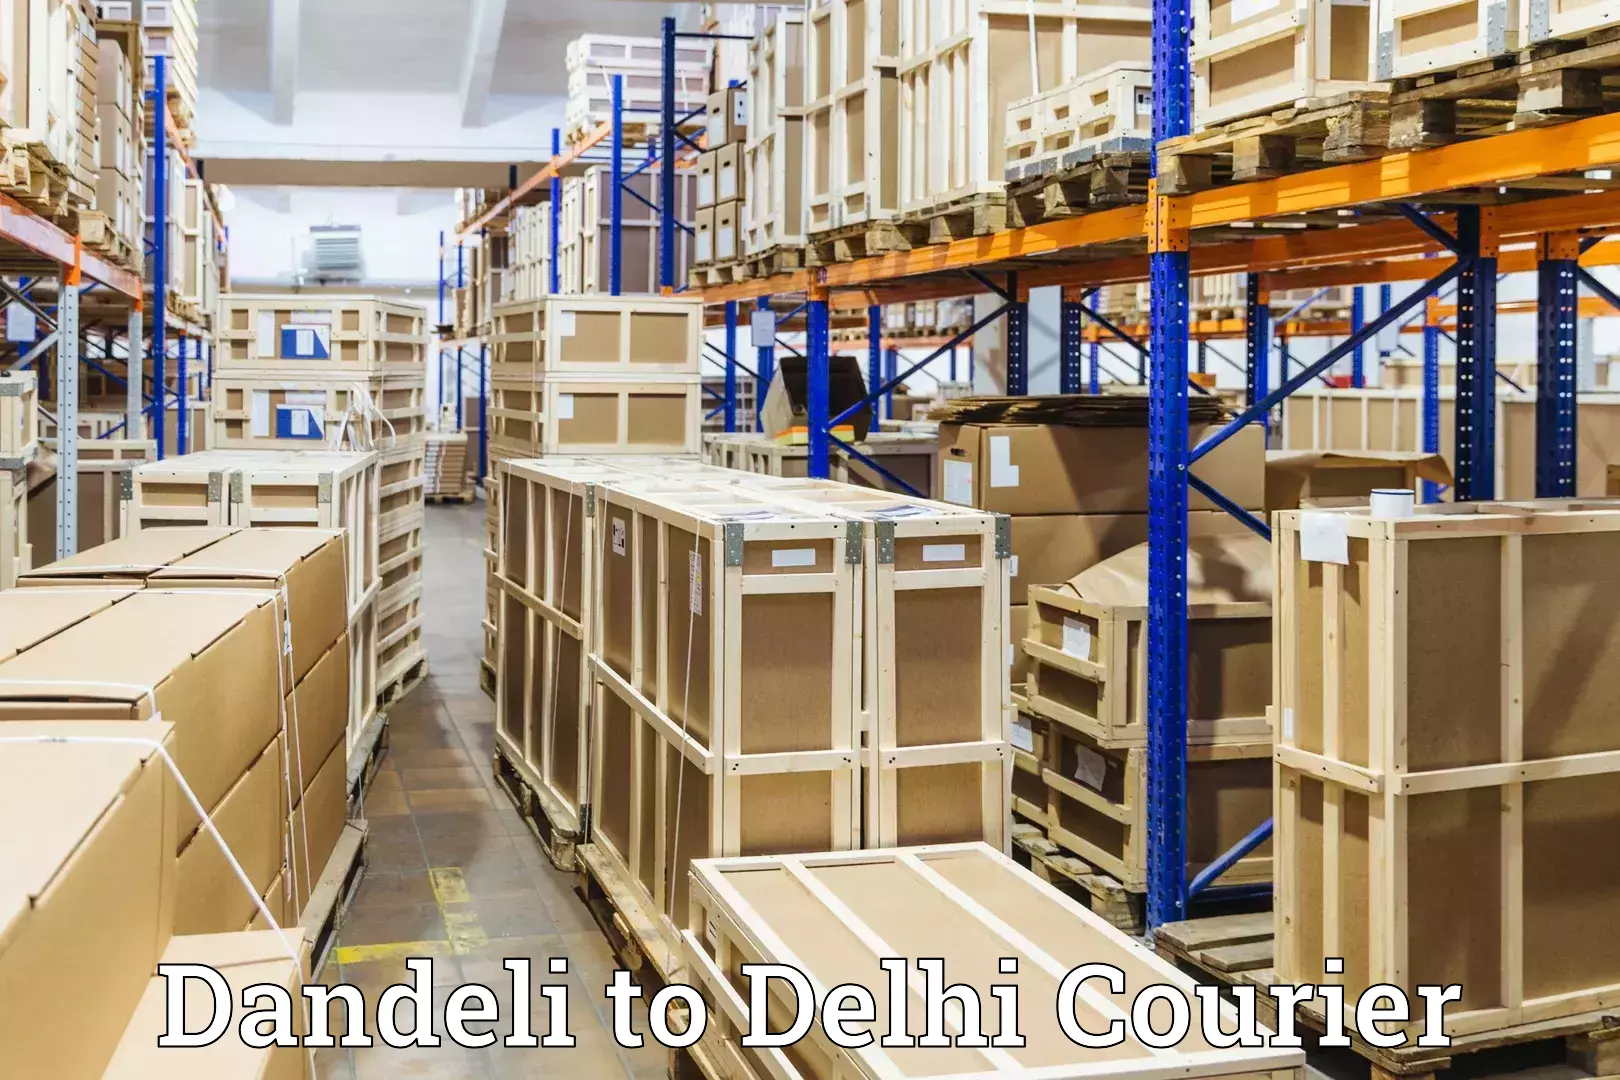 Personal luggage delivery Dandeli to Jamia Millia Islamia New Delhi